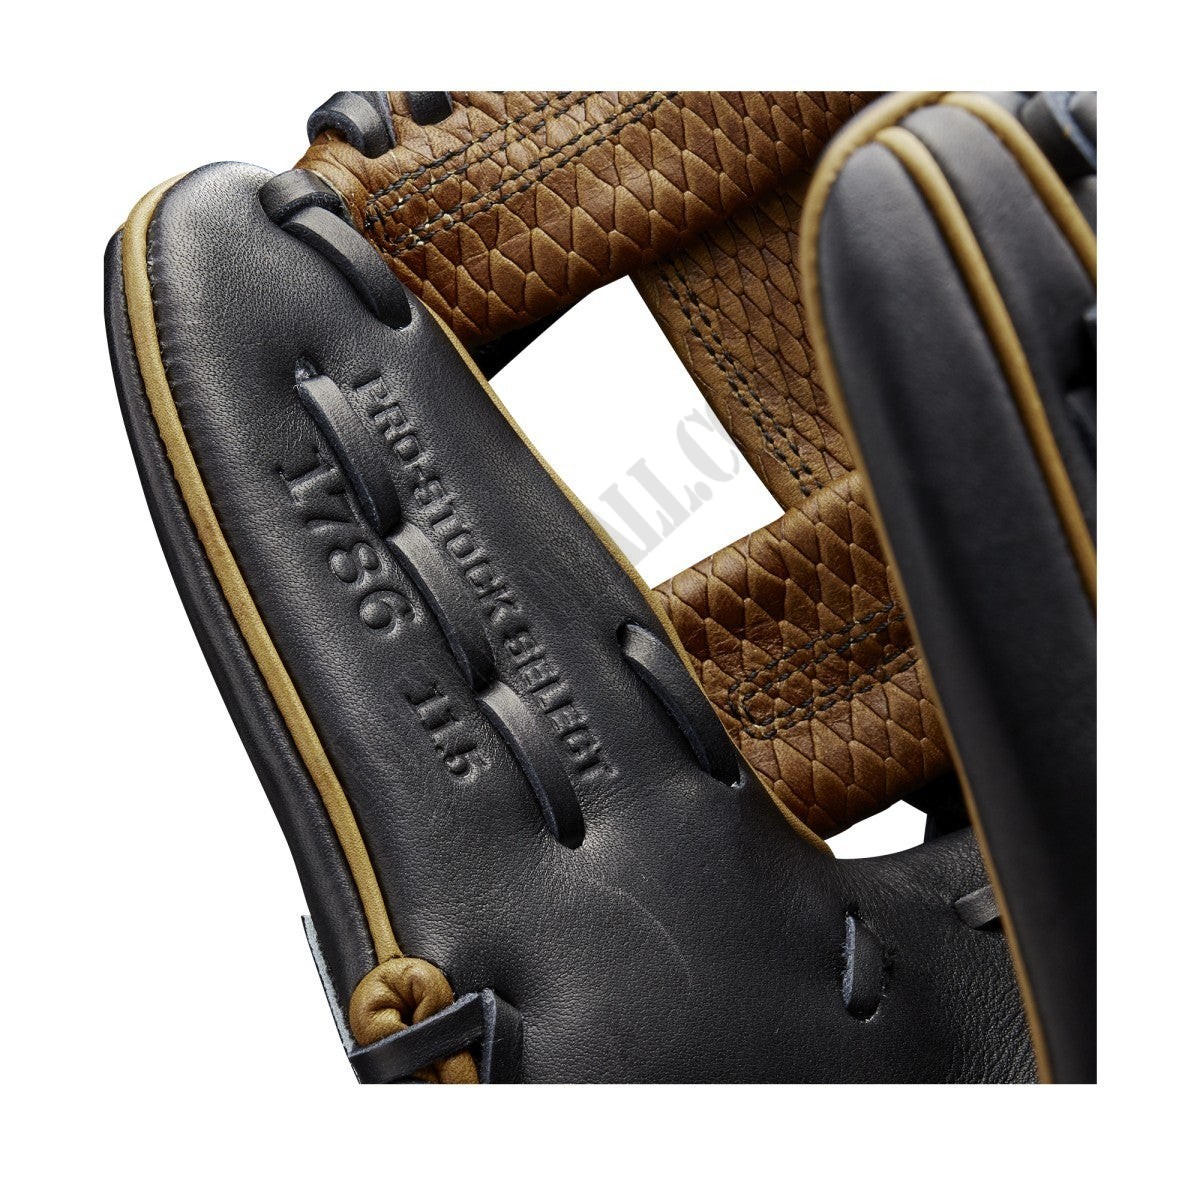 2021 A2K 1786 11.5" Infield Baseball Glove ● Wilson Promotions - -7